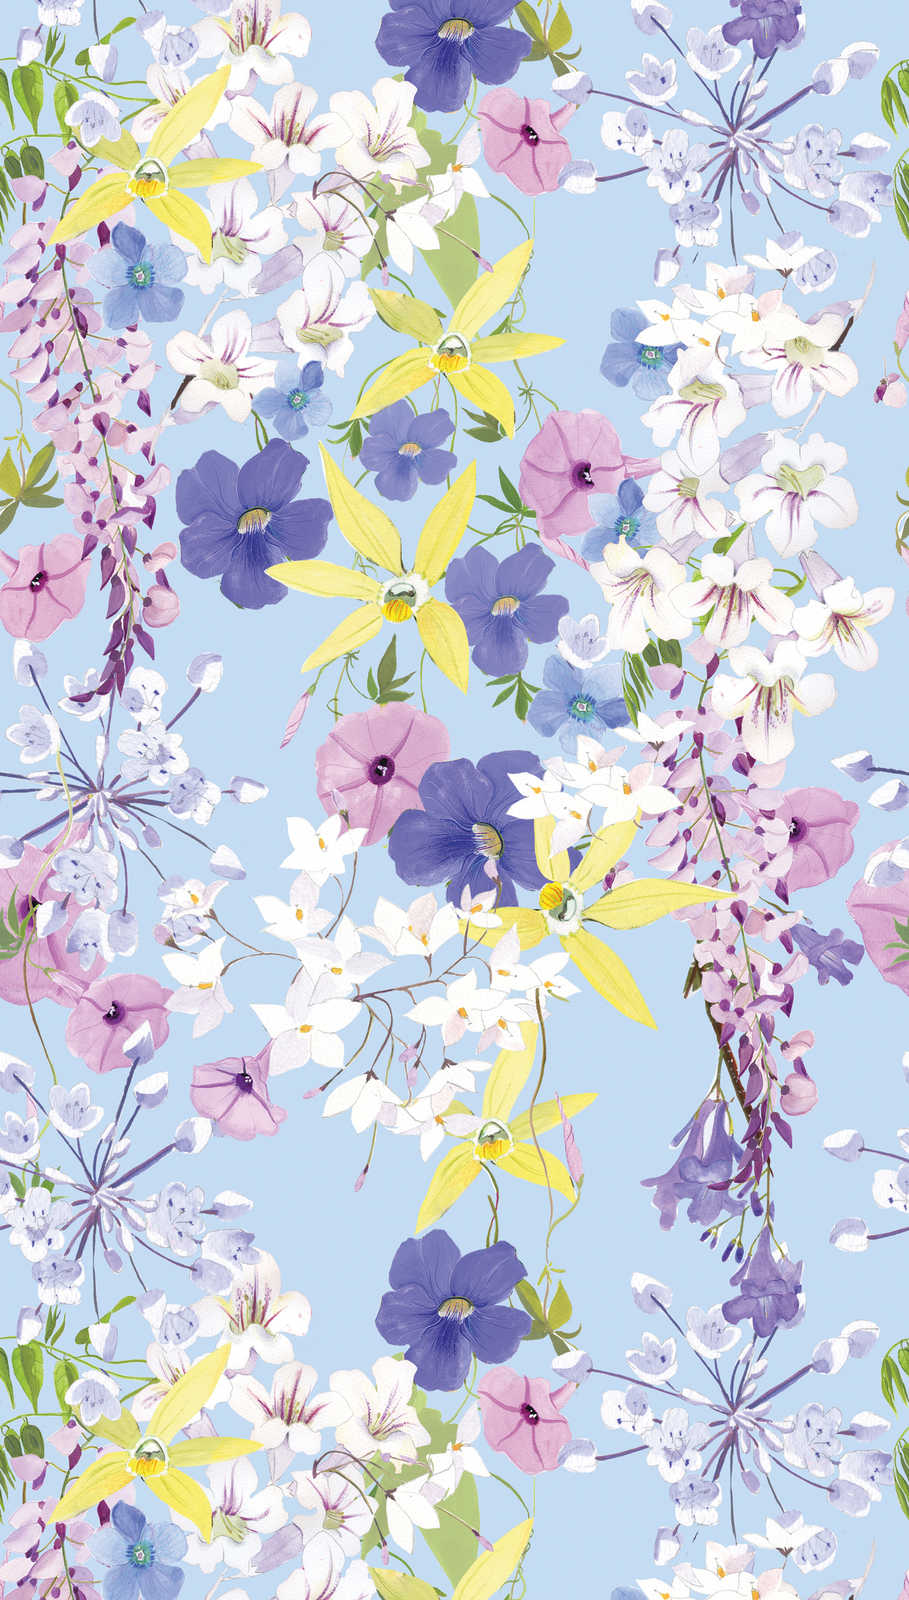             Blumenmotiv Tapete in kühlen Farben – Bunt, Flieder, Gelb
        